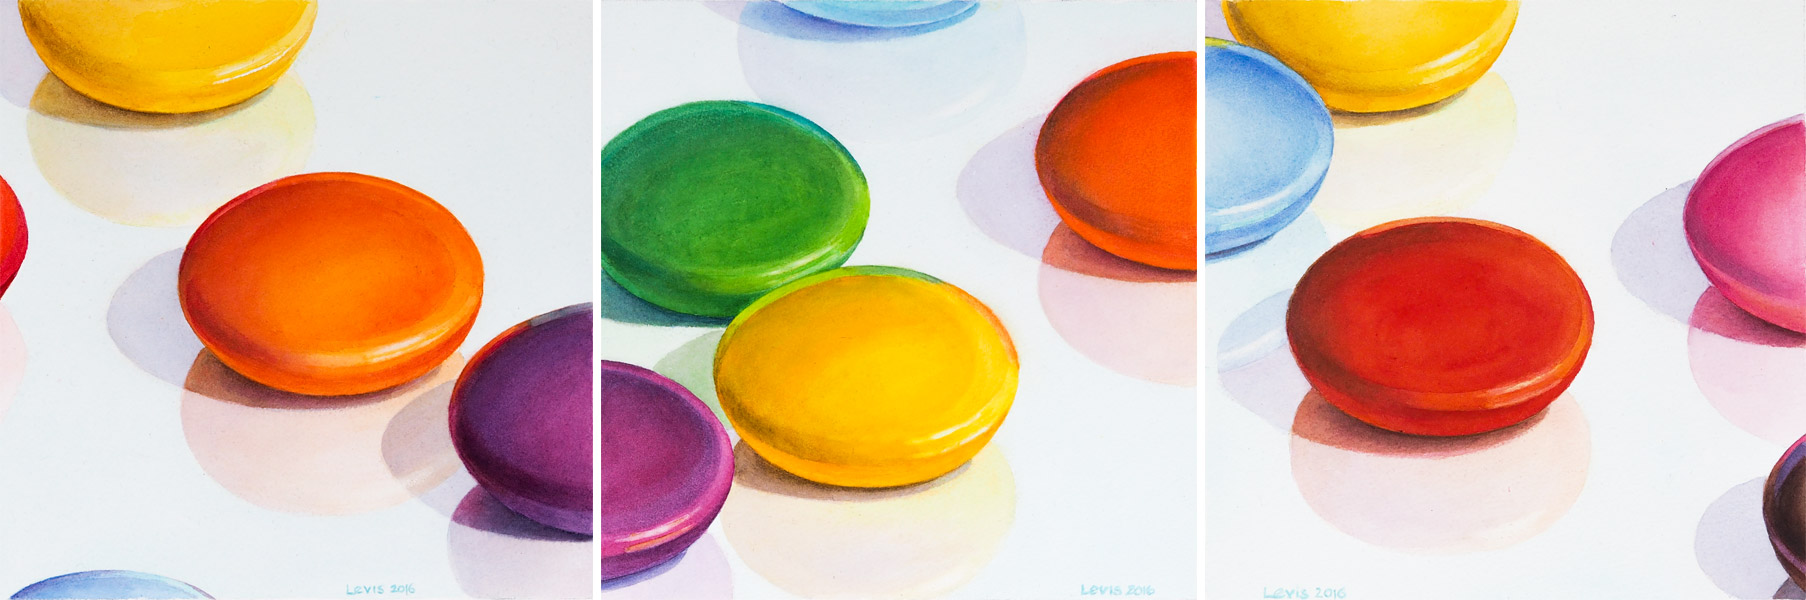 Acht Farben: Smarties: Dreiteilig - Jeweils einige bunte Smarties auf reflektierender Fläche. Aquarell, 25 x 75cm. Artwork by Petra Levis